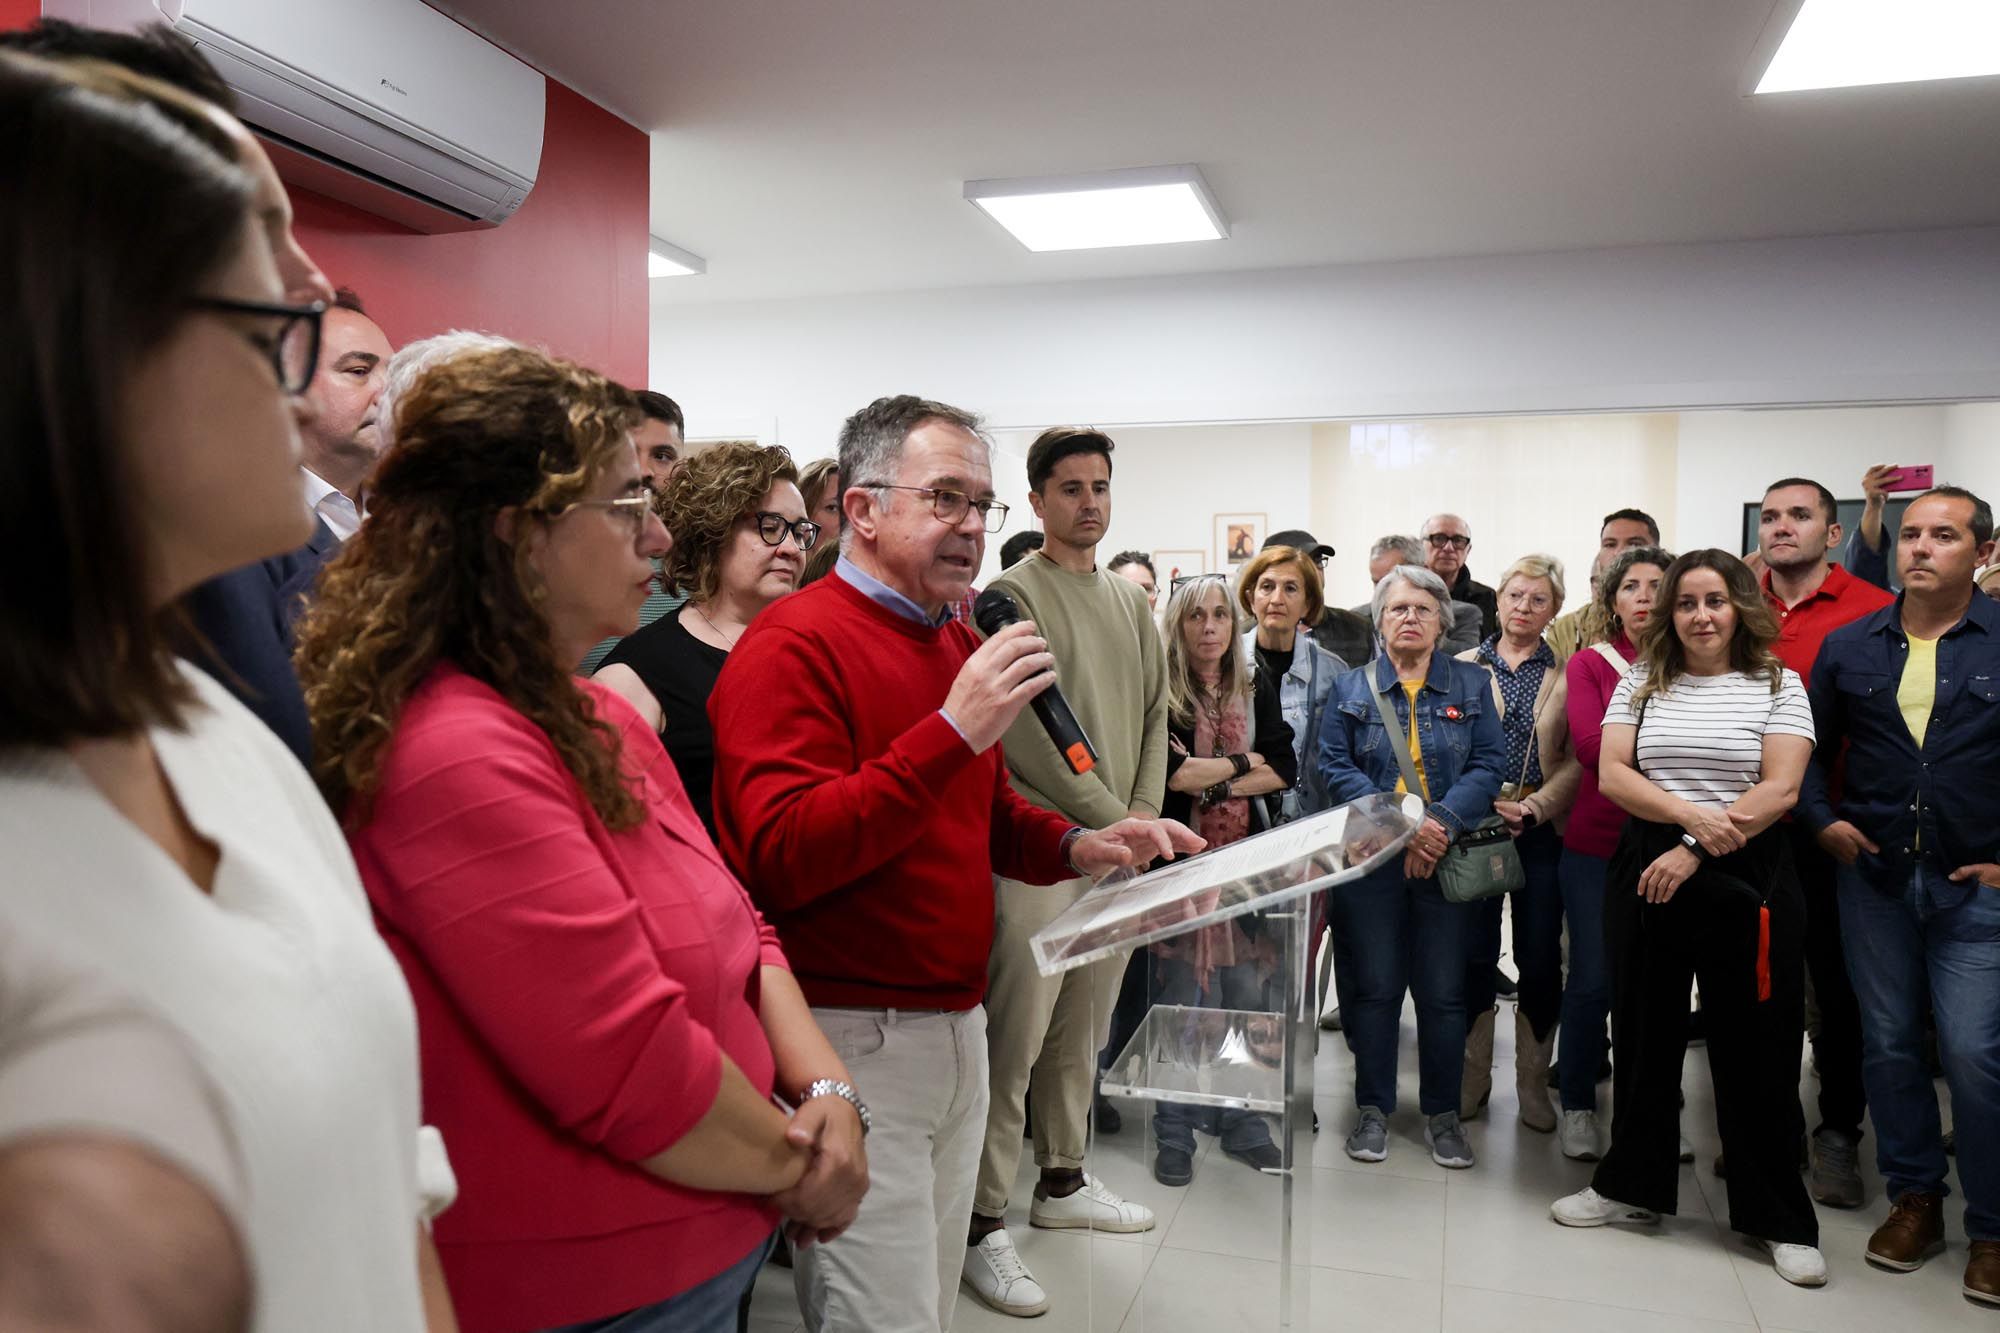 Los socialistas de Ibiza muestran su apoyo a Pedro Sánchez